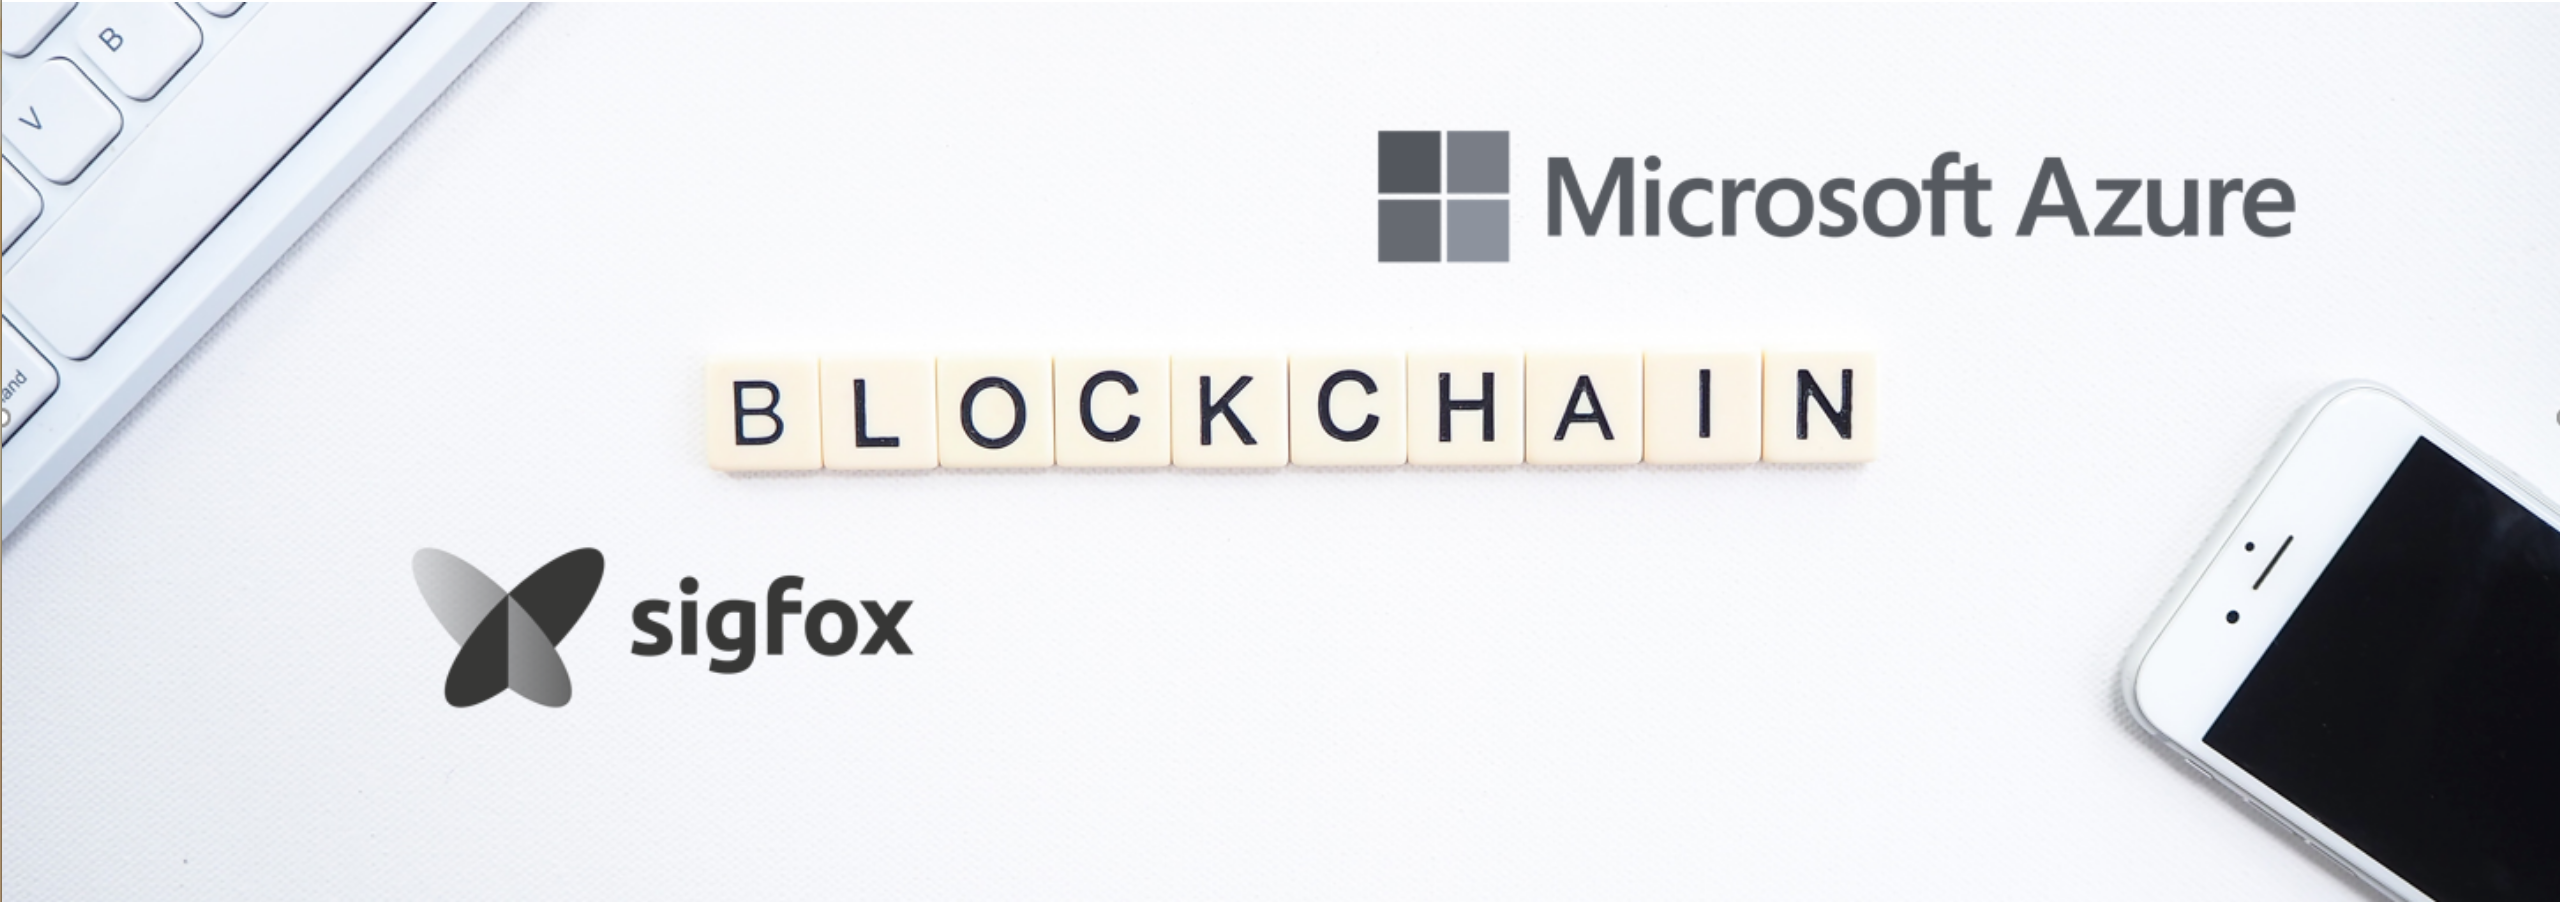 IoT y Blockchain: un Demo App con Microsoft Azure